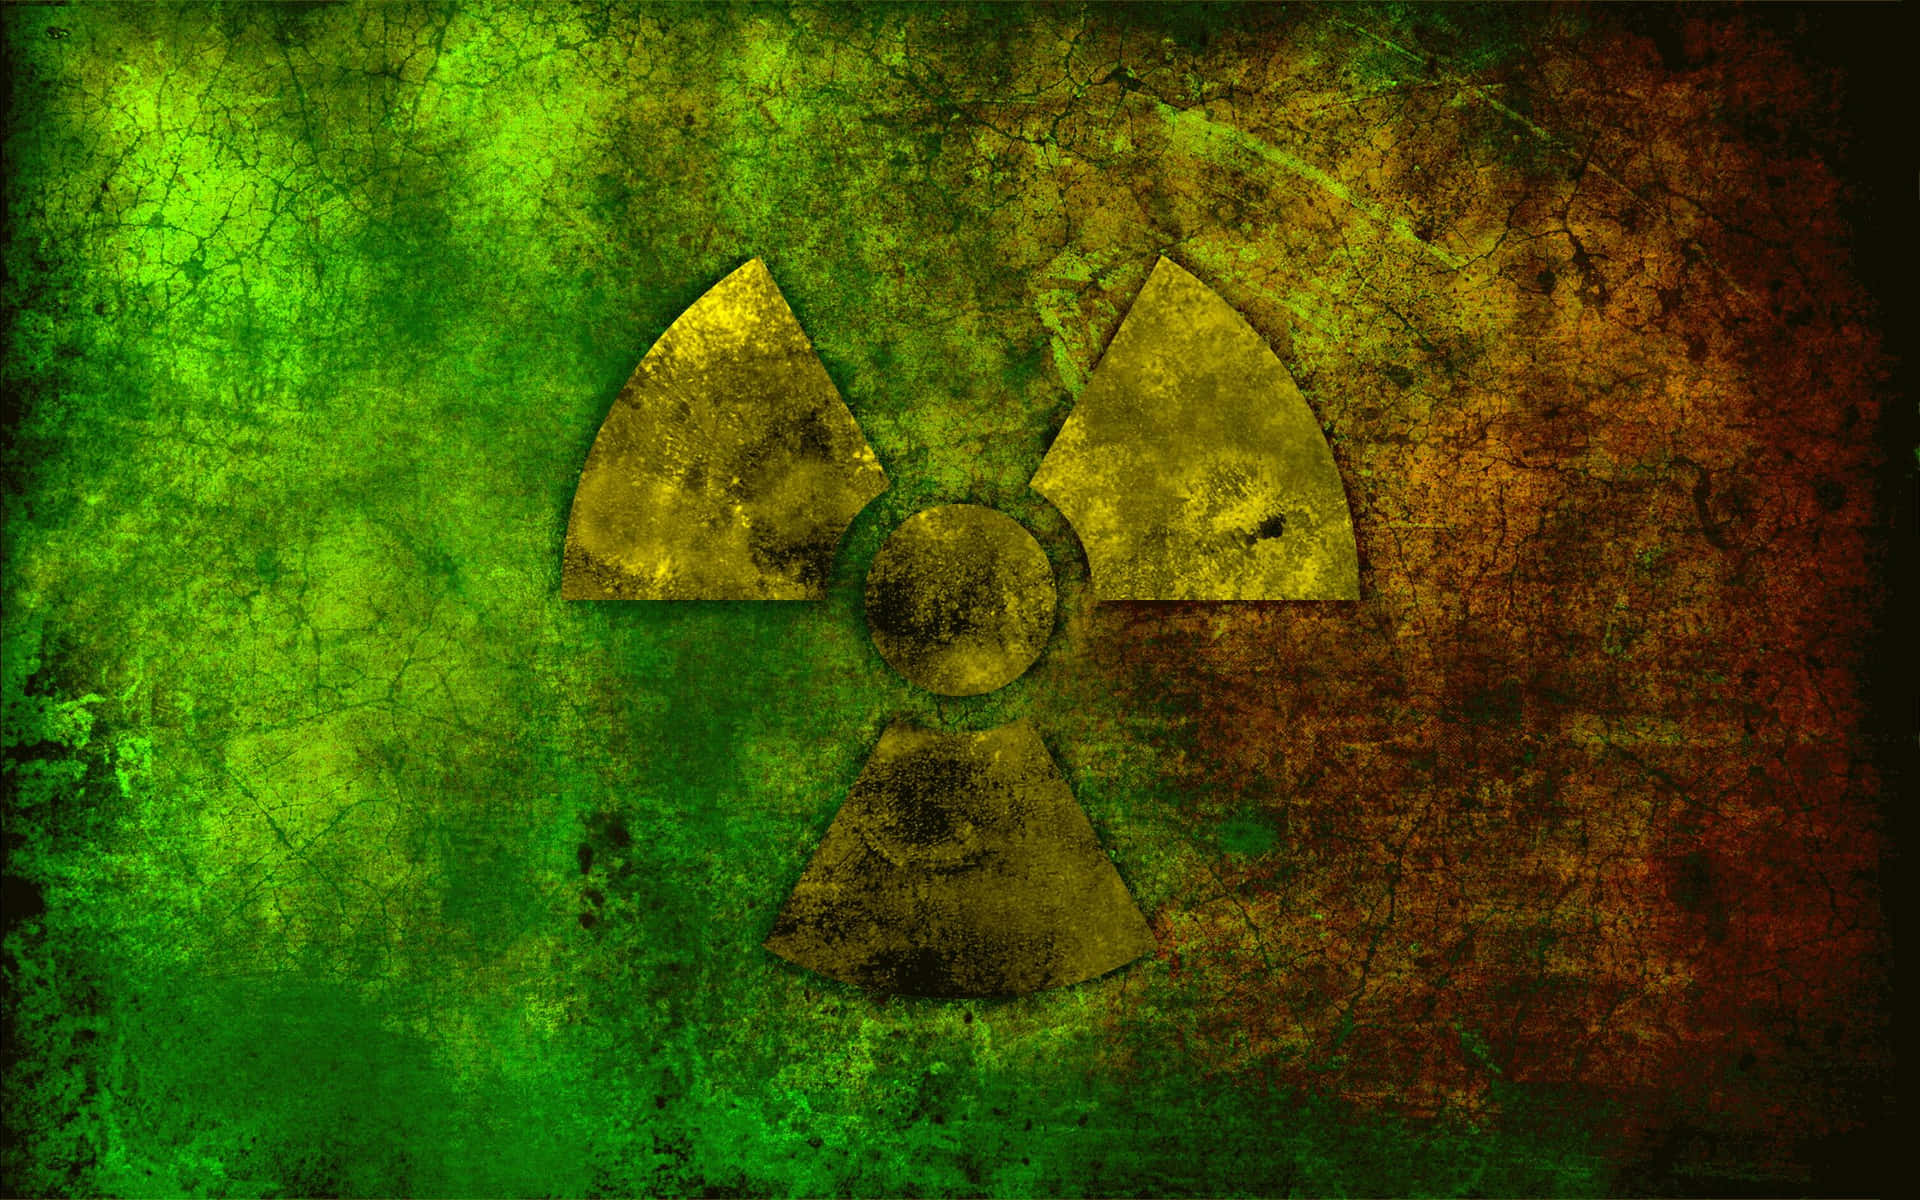 Etradioaktivt Symbol På En Grøn Og Brun Baggrund.